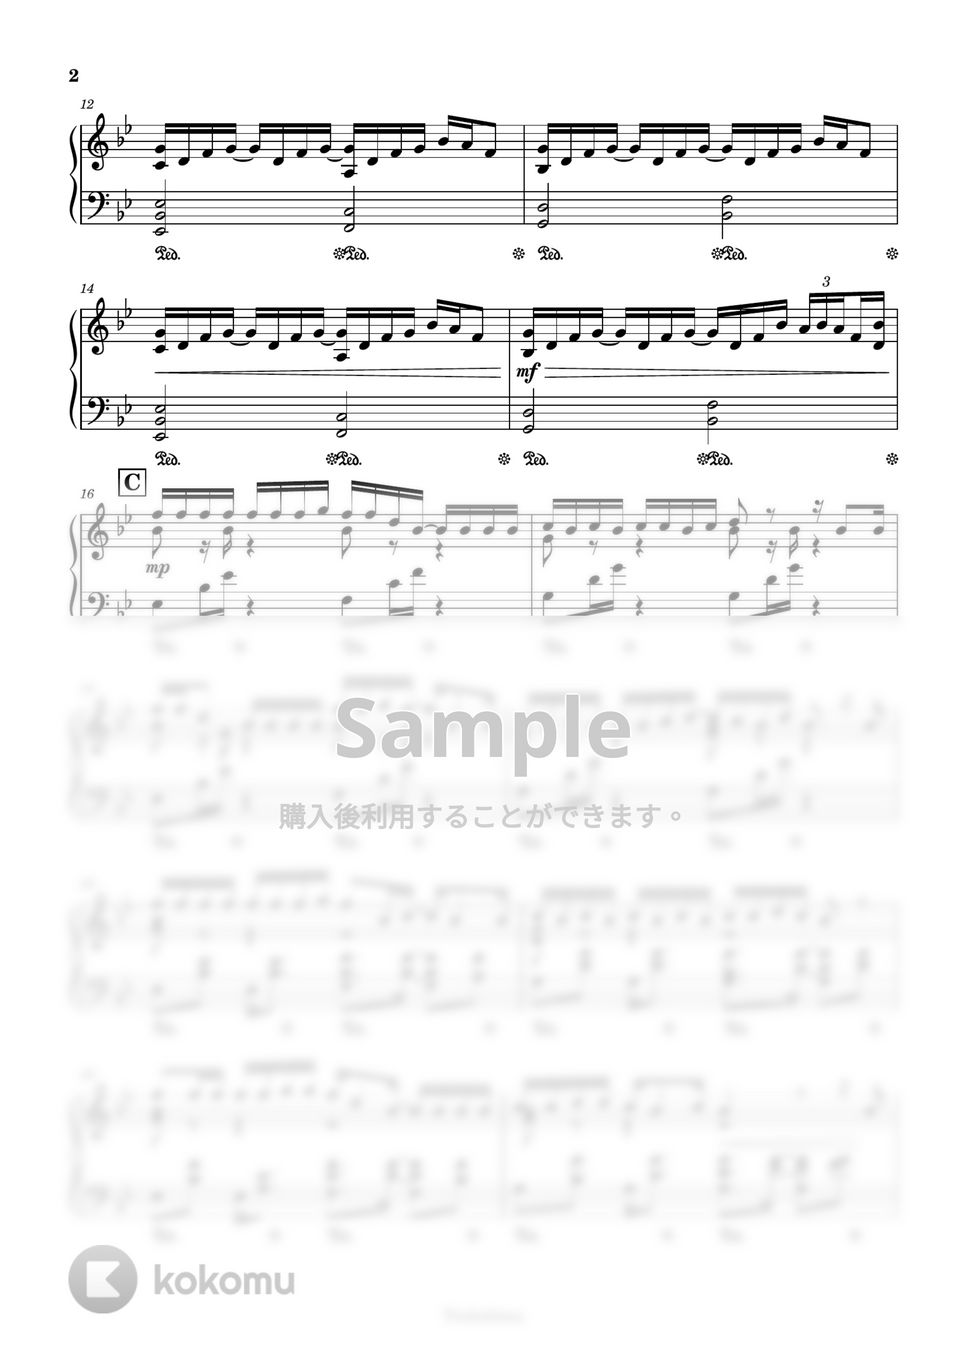 鏡音レン・リン - あの夏が飽和する。 (カンザキイオリ作詞作曲) by Trohishima